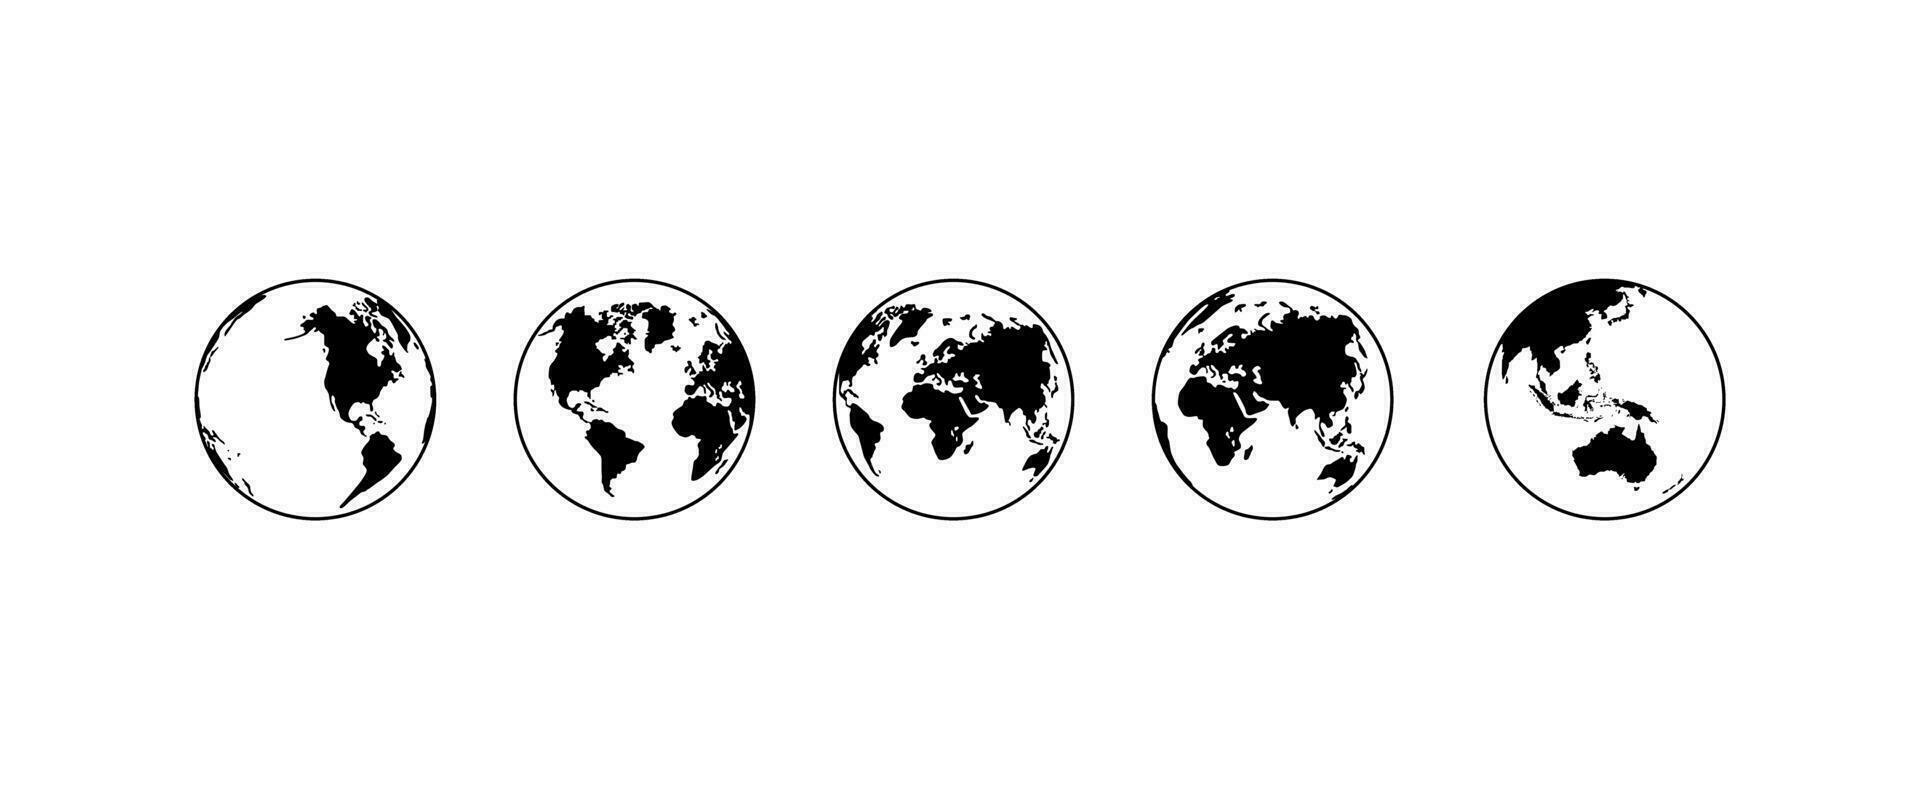 mundo mapa en globo silueta para para icono, símbolo, aplicación, sitio web, pictograma, logo tipo, Arte ilustración o gráfico diseño elemento. vector ilustración